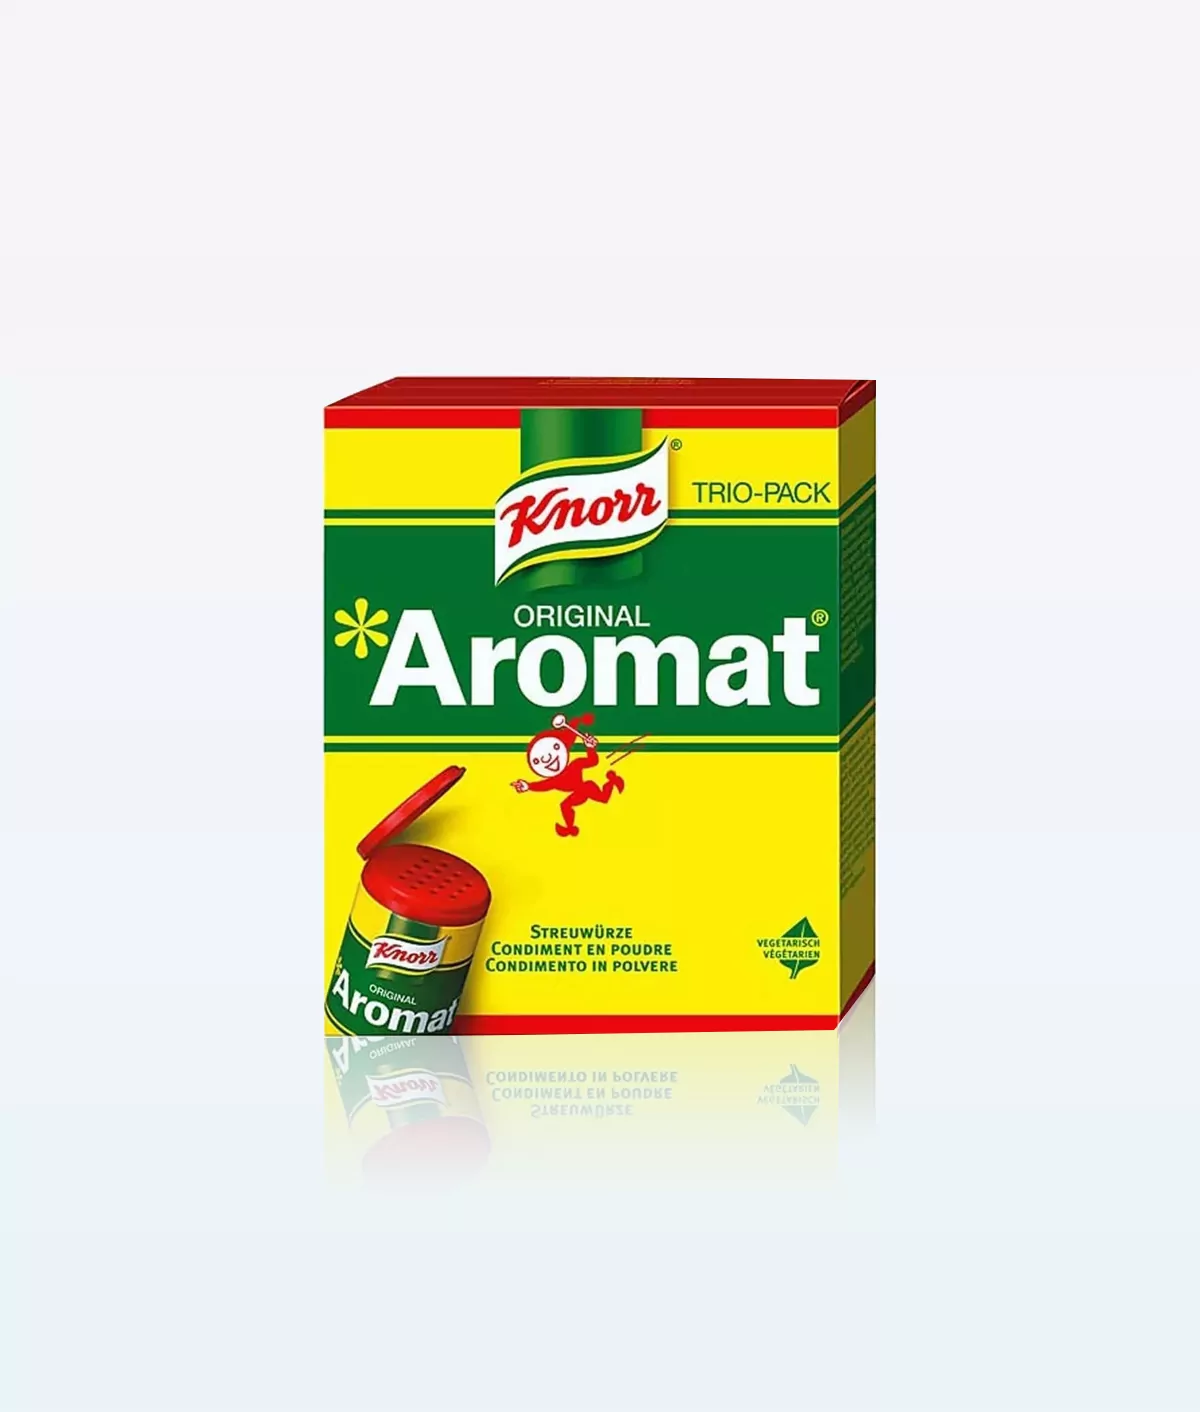 Knorr Swiss Aromat assorti trio pack 270g